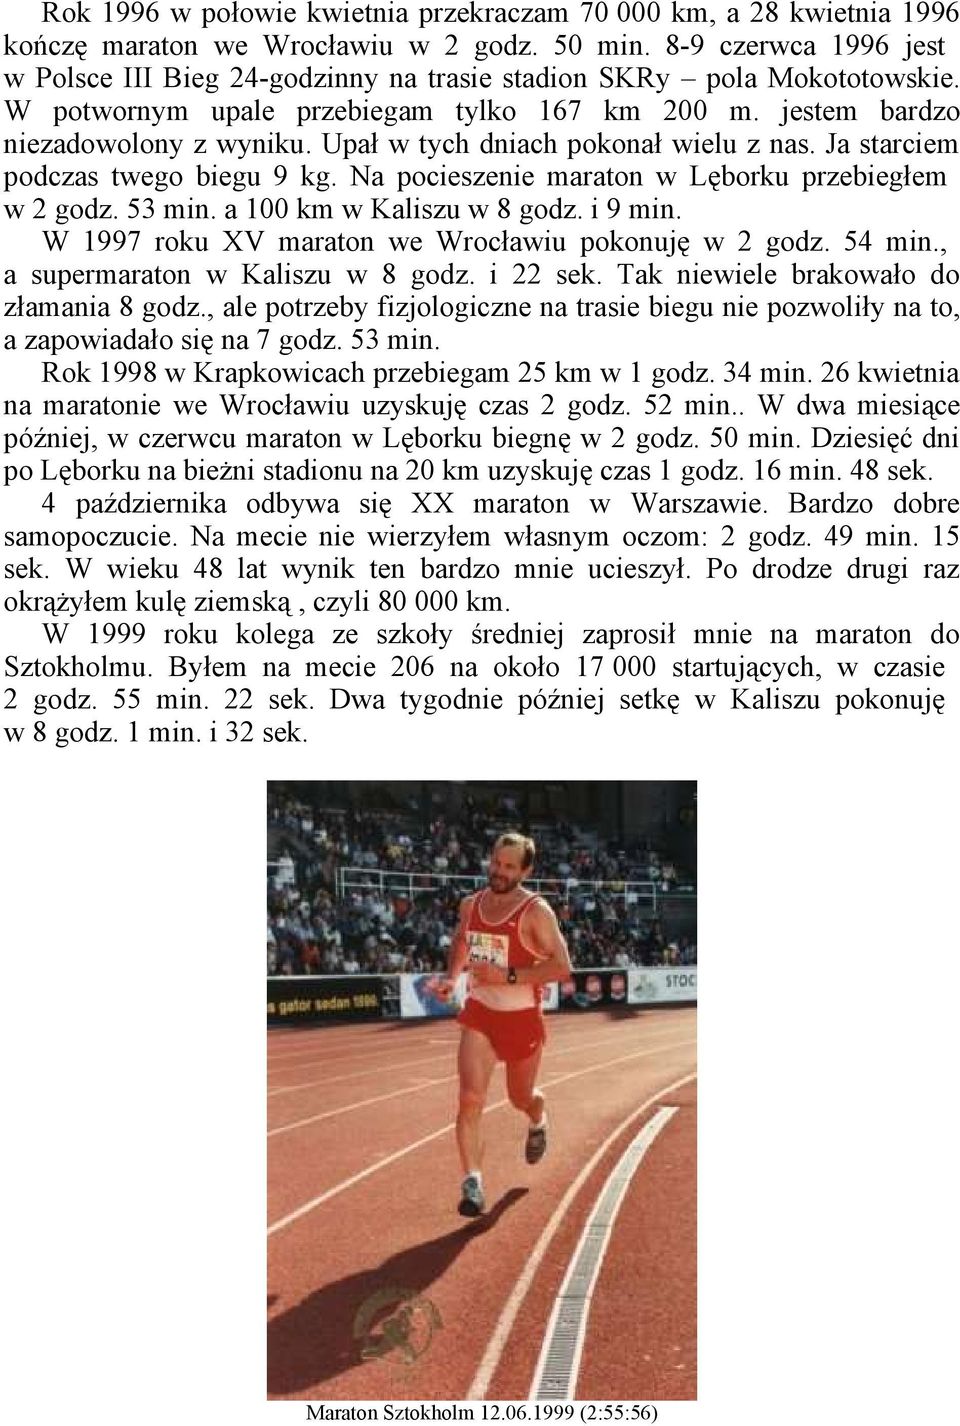 Upał w tych dniach pokonał wielu z nas. Ja starciem podczas twego biegu 9 kg. Na pocieszenie maraton w Lęborku przebiegłem w 2 godz. 53 min. a 100 km w Kaliszu w 8 godz. i 9 min.